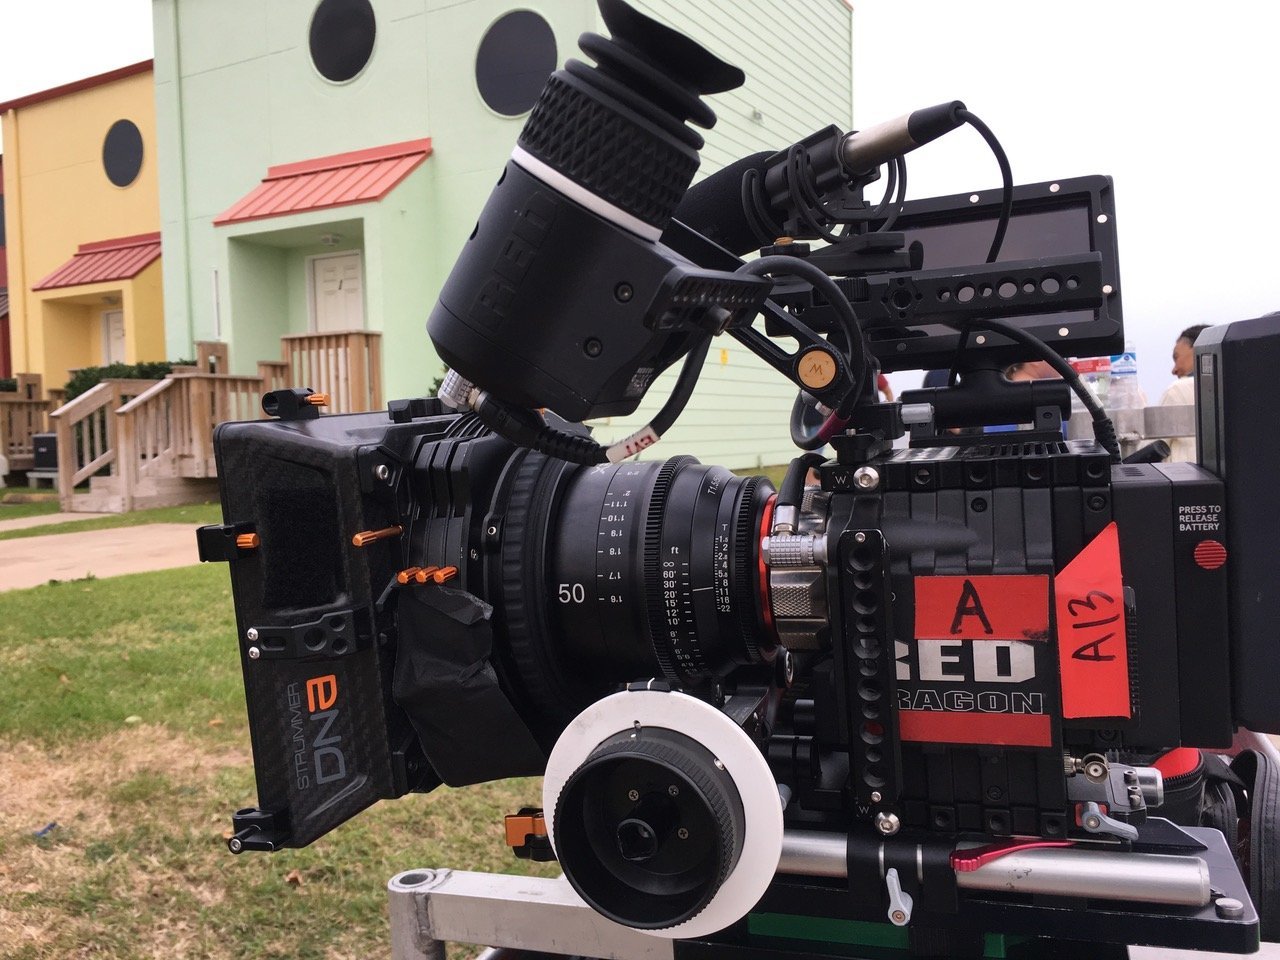 50mm T1.5 XEEN Pro Cinema Lens - Rokinon Lenses - XN50-C